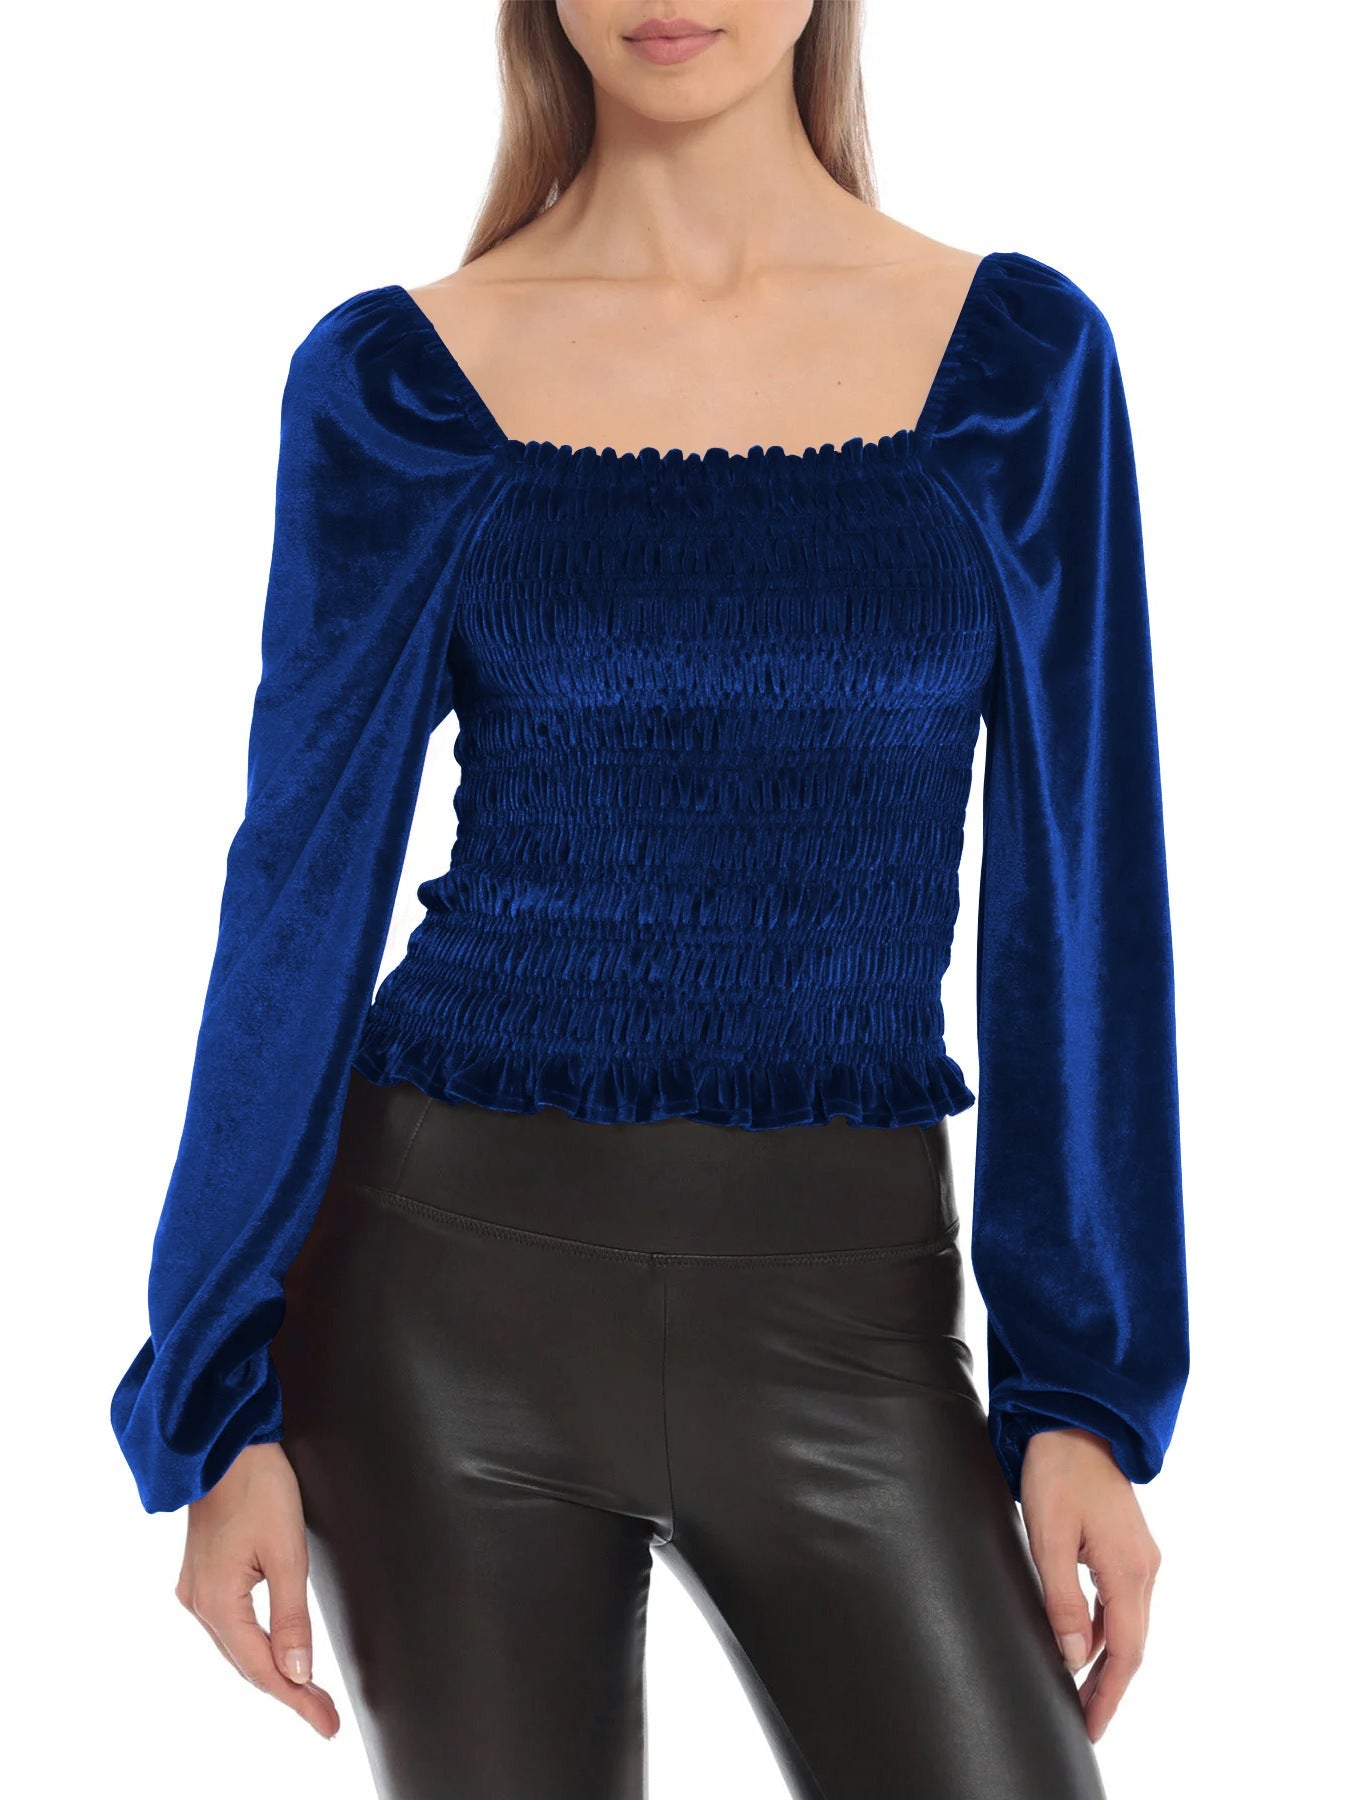 Elegant Designed Velvet Long Sleeves T Shirts-Shirts & Tops-Blue-S-Free Shipping Leatheretro